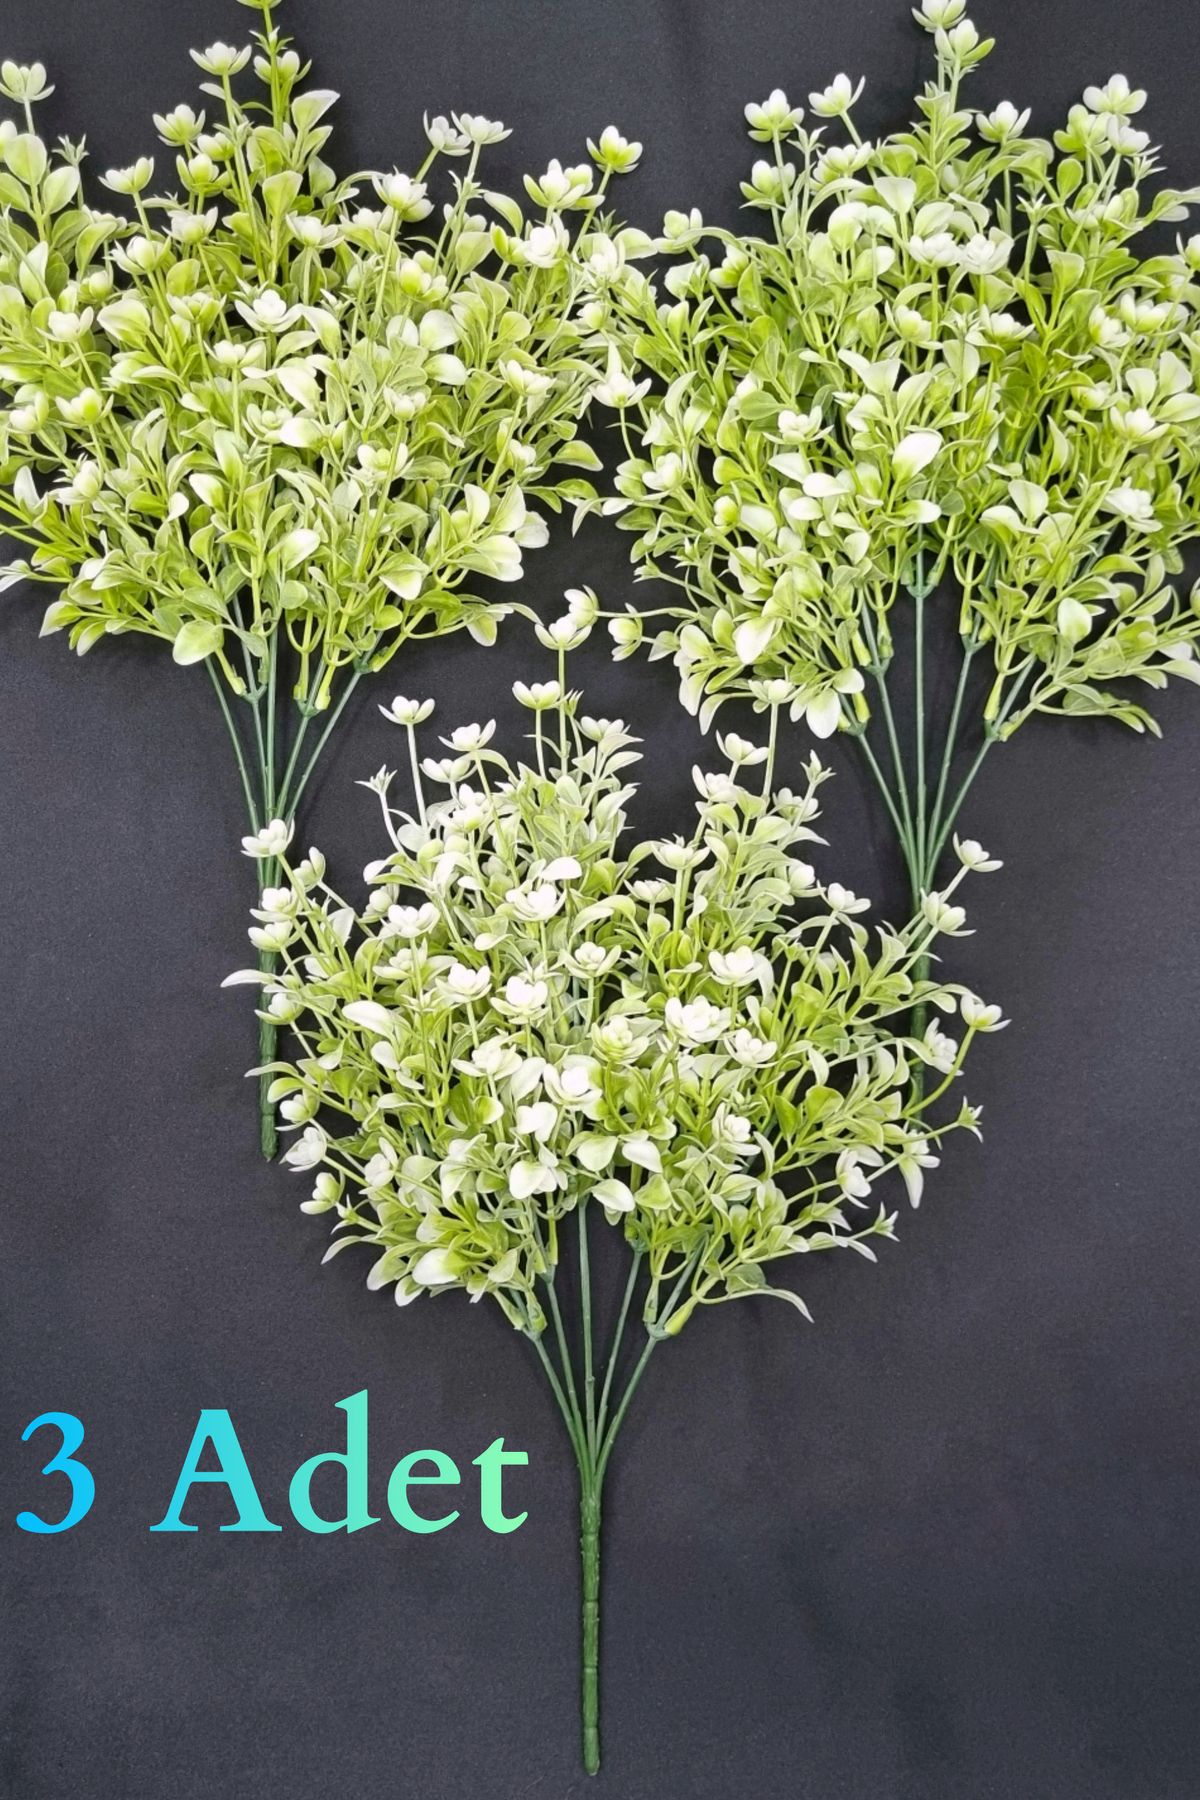 MD Aspiz Flowers 3 Adet Yapay Kaliteli Şimşir Demeti _ Dekoratif Fern Gül Çiçeği Buketi Saksısız Sarmaşık Ağacı